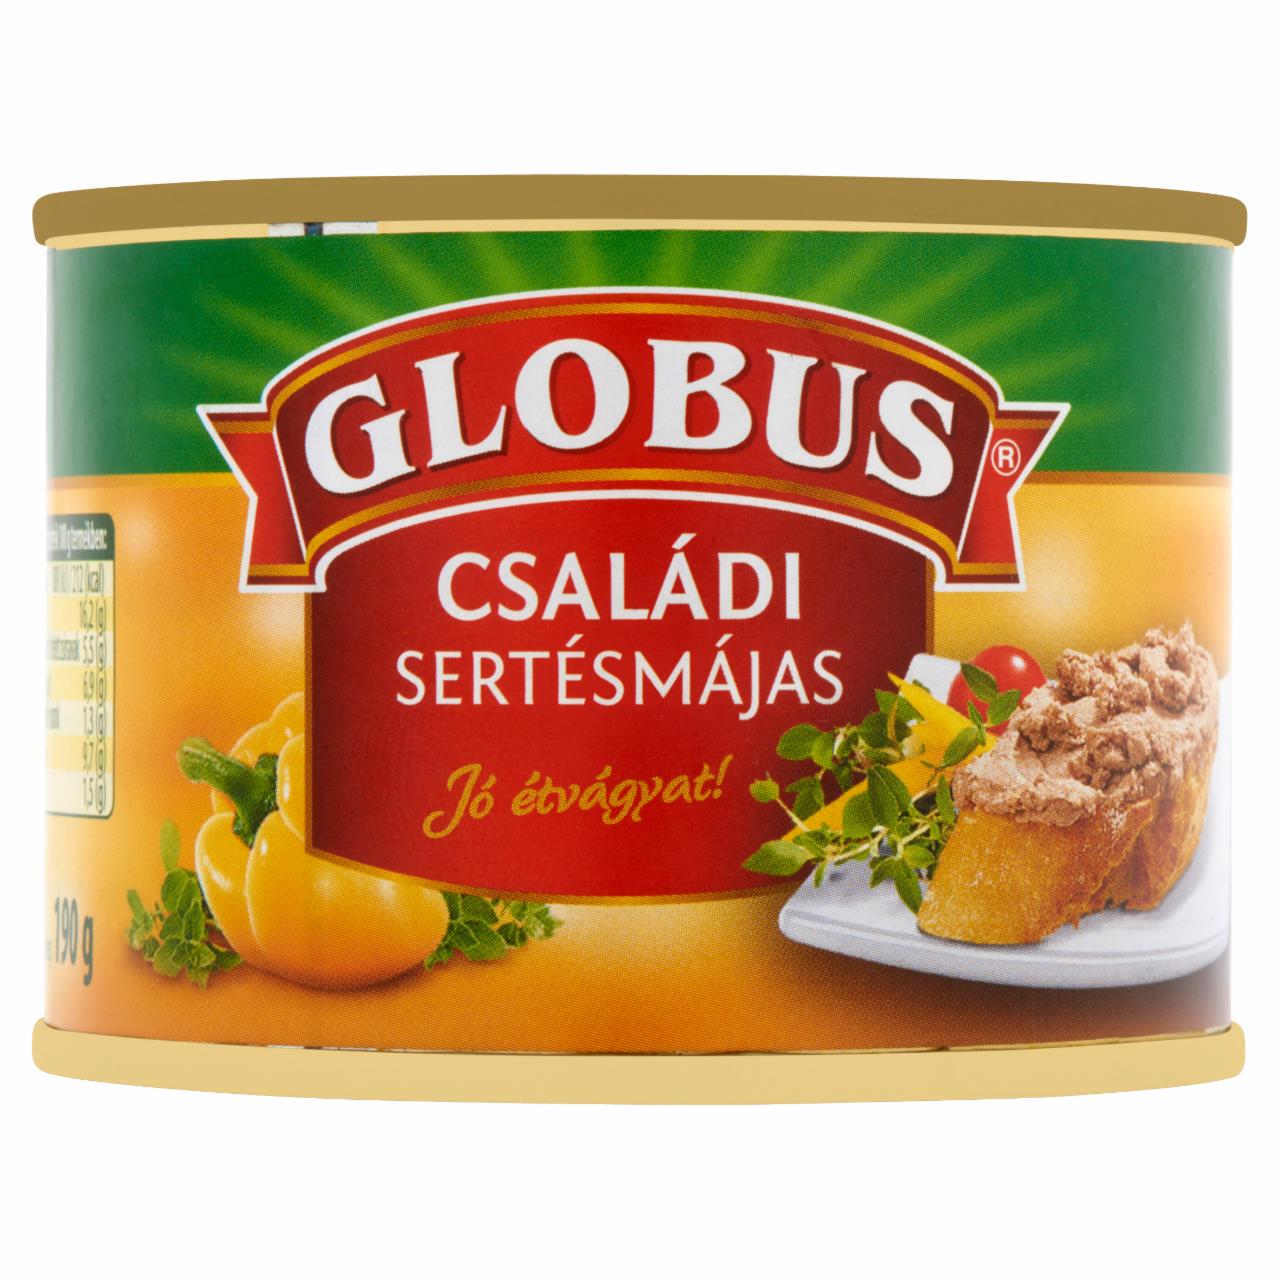 Képek - Globus családi sertésmájas 190 g